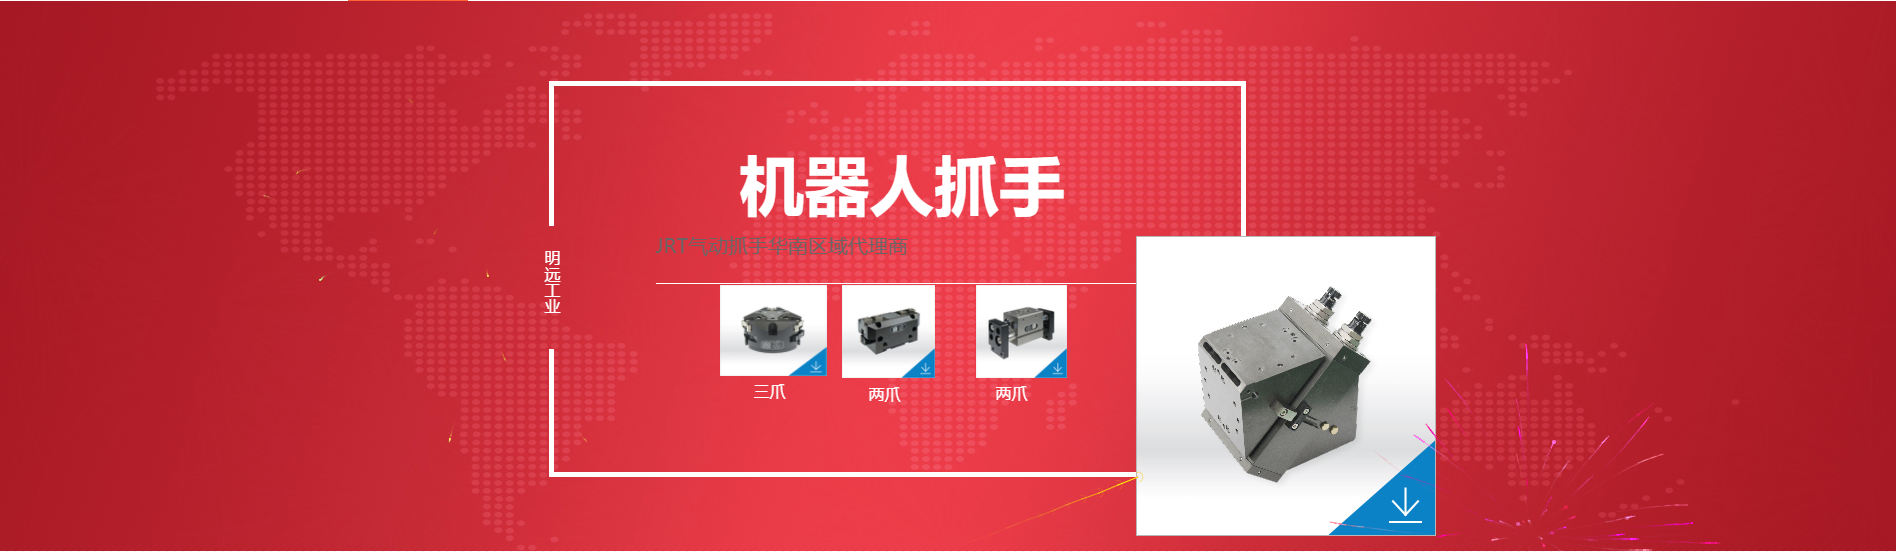 广州明远工业自动化设备有限公司